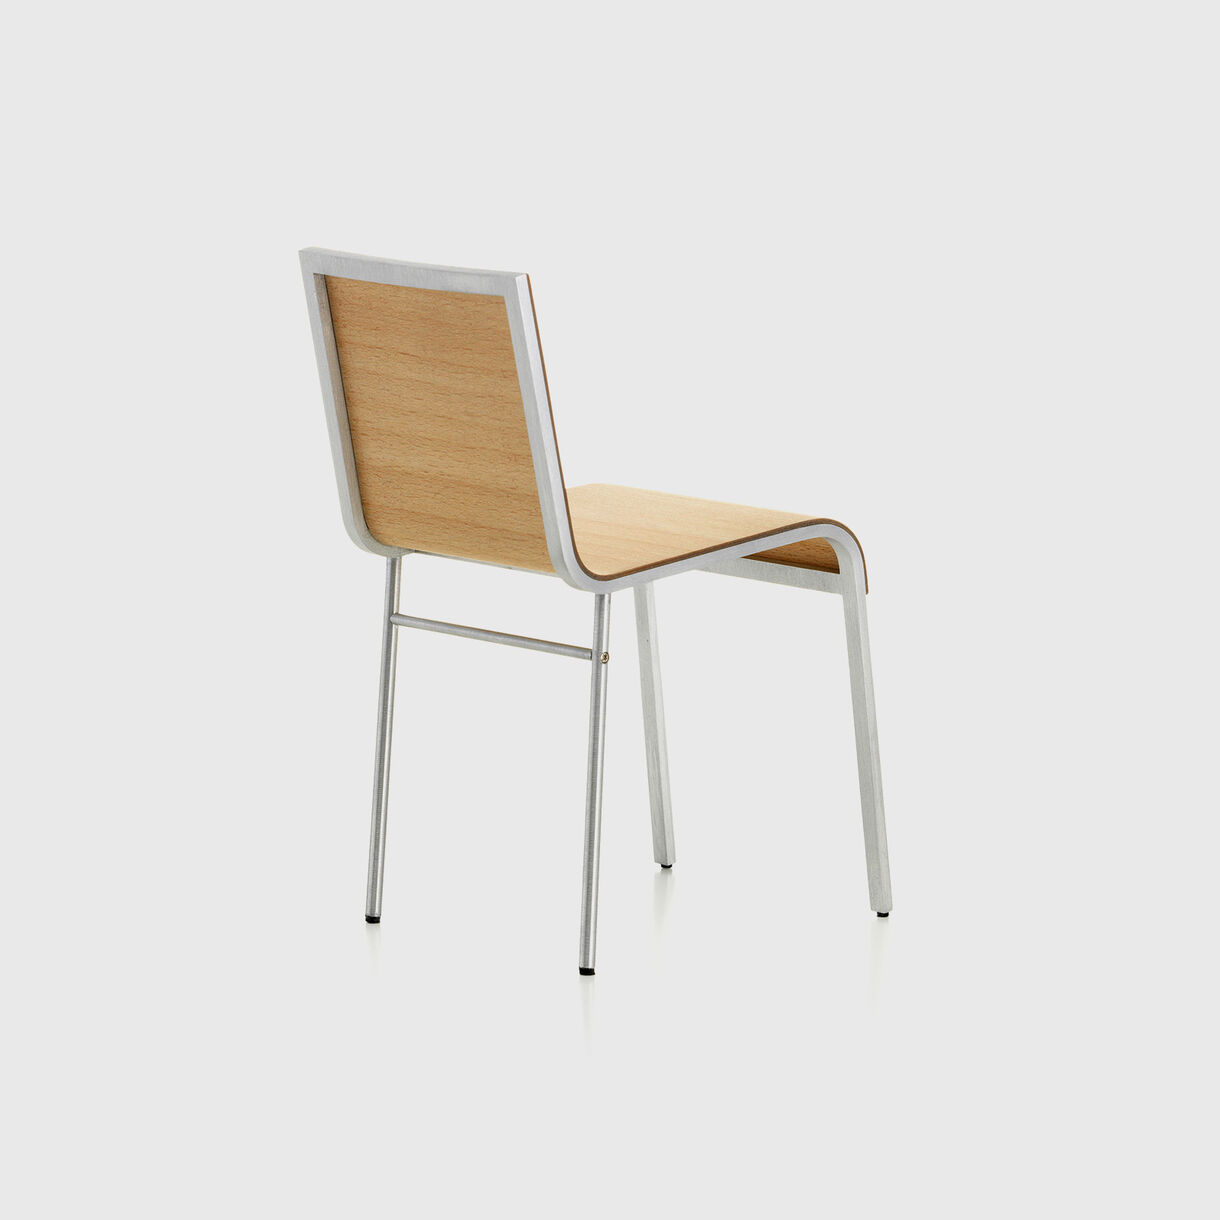 Miniature 02 Chair